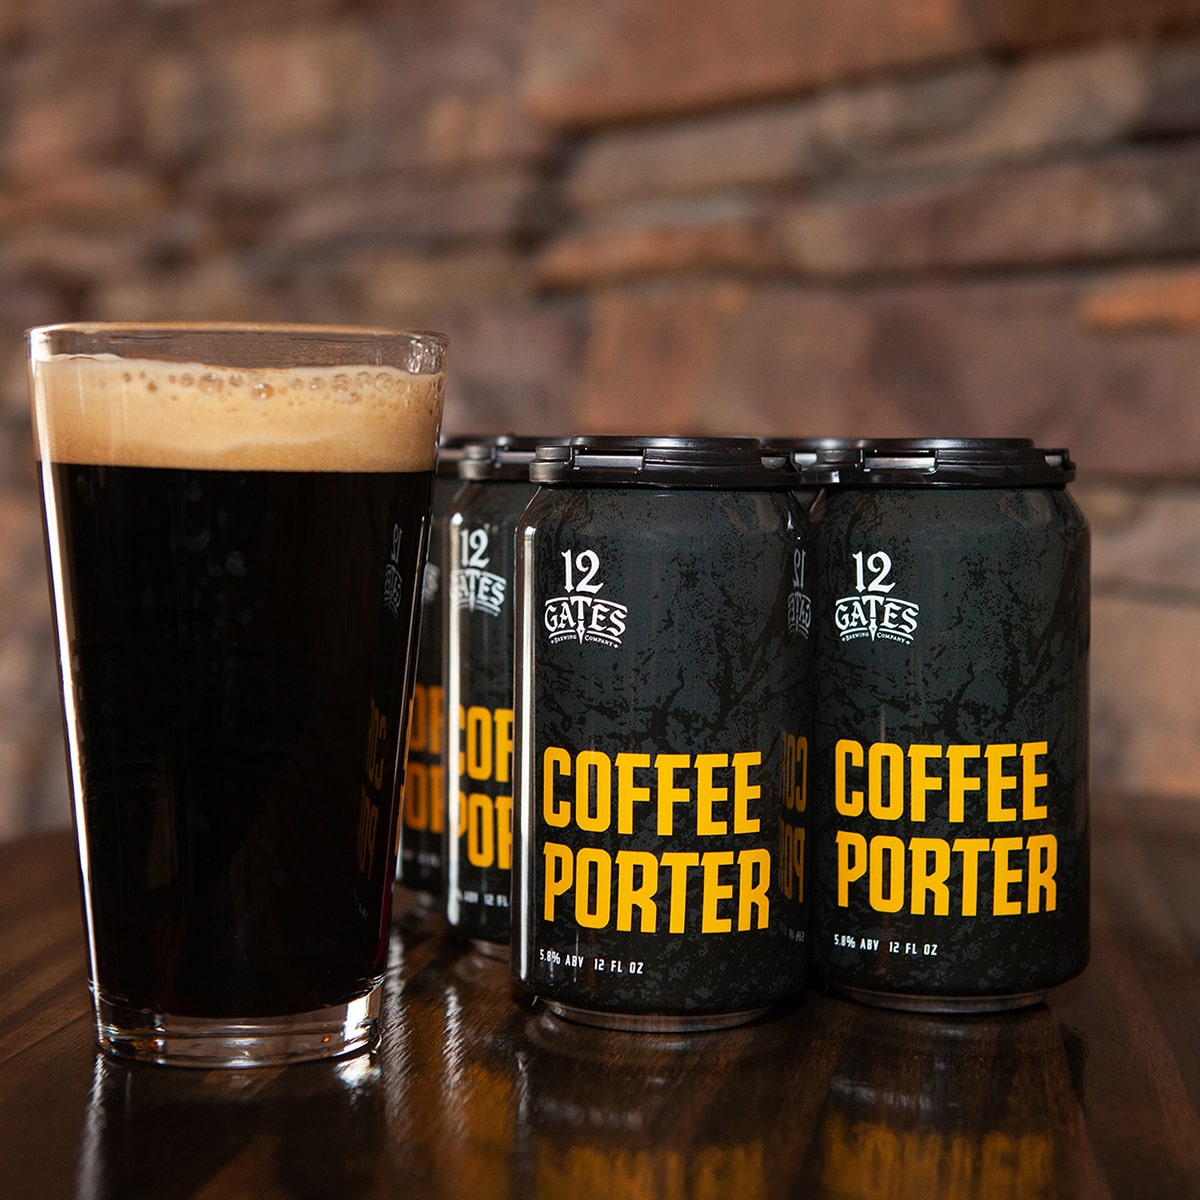 Coffee Porter - American Porter - 12 Gates - Buffalocal